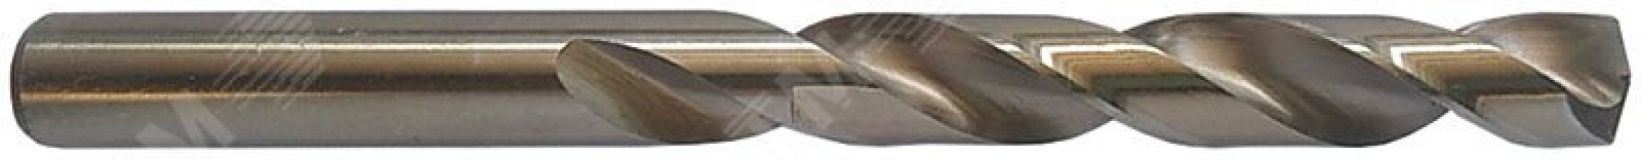 Сверло по металлу Cutop Profi с кобальтом 5% 2.3 x 53 мм, 2 шт 48-358 CUTOP